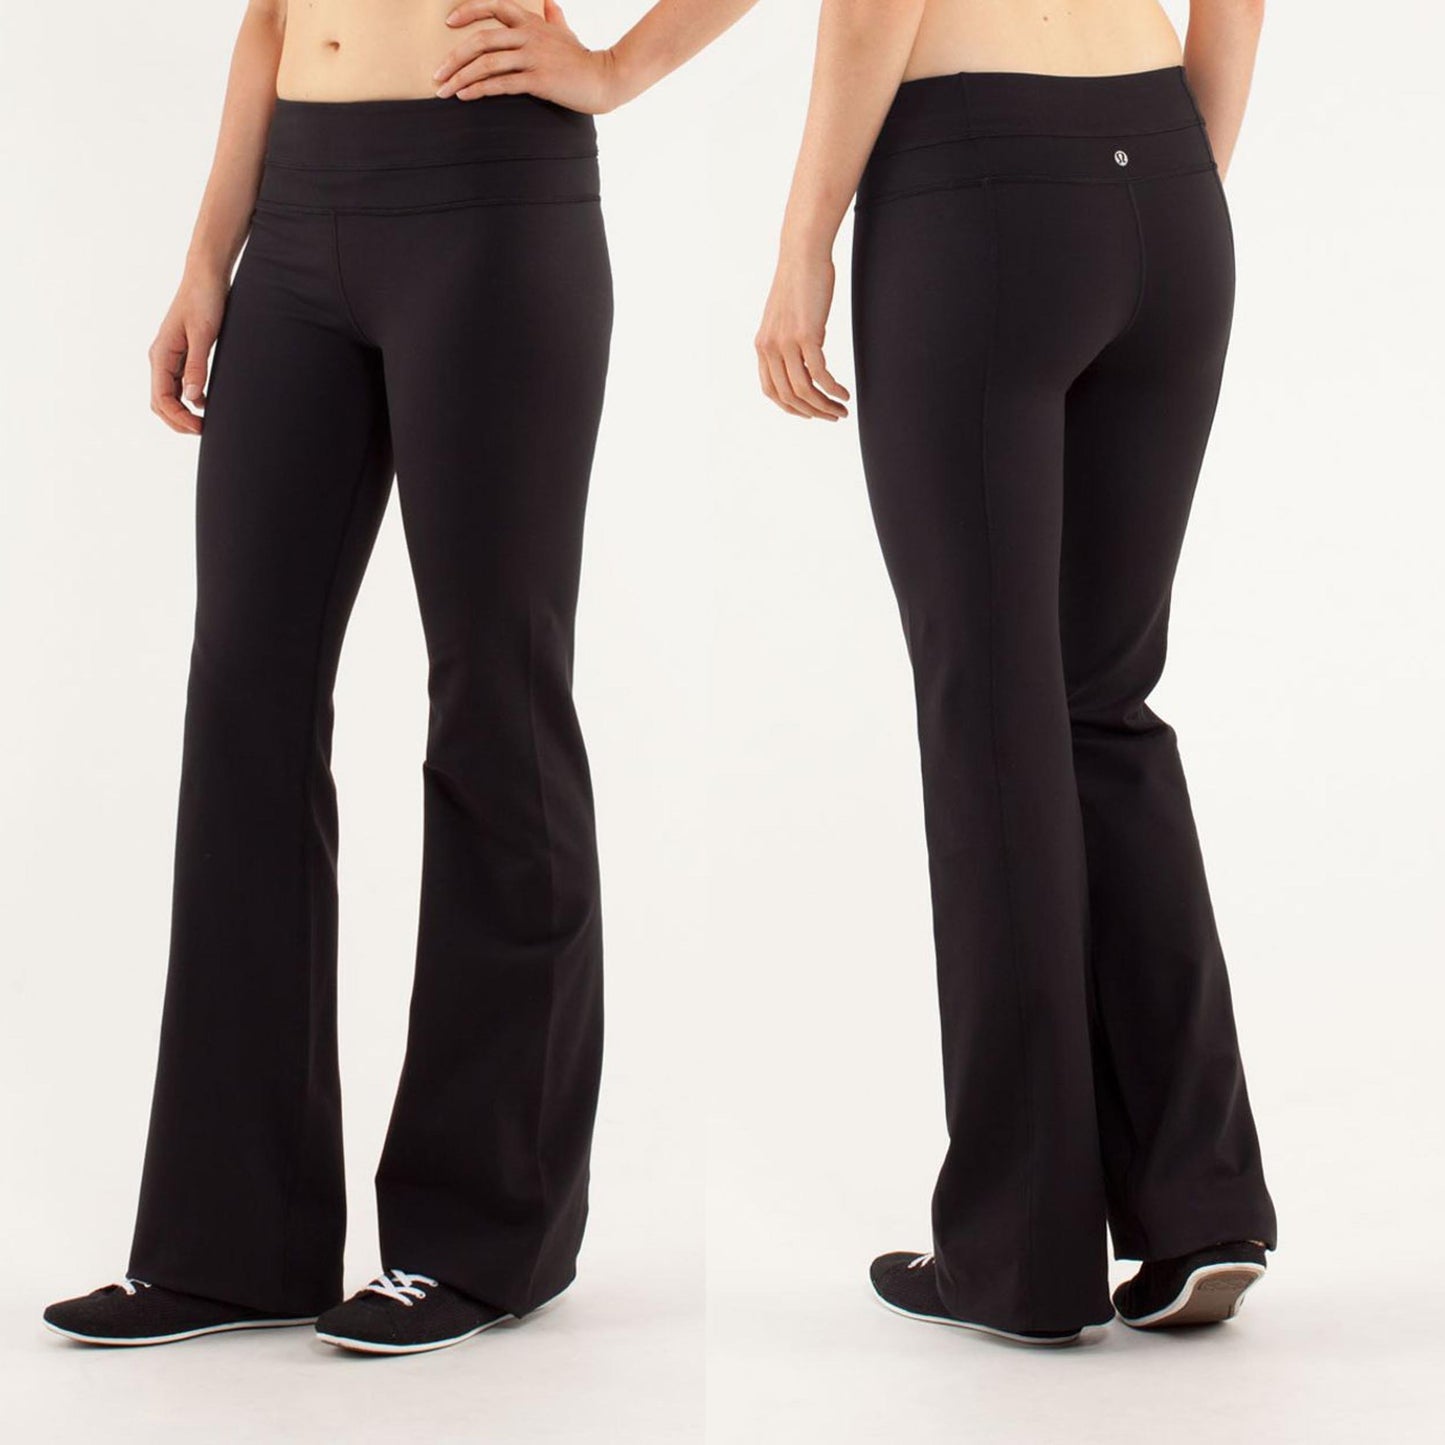 lululemon black groove pants - size 6